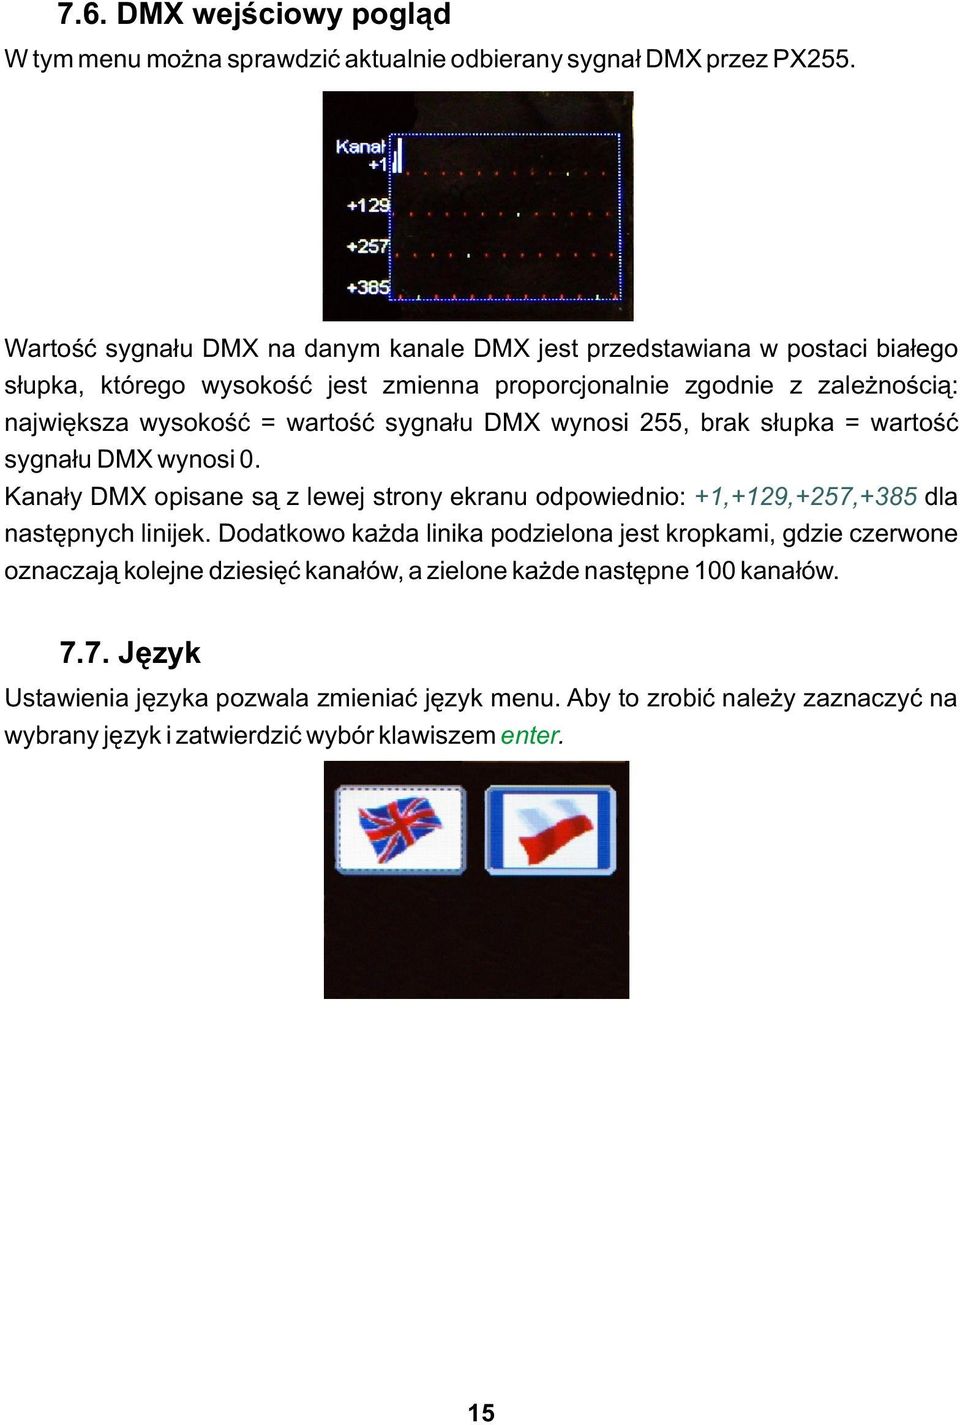 wartość sygnału DMX wynosi 255, brak słupka = wartość sygnału DMX wynosi 0. Kanały DMX opisane są z lewej strony ekranu odpowiednio: +1,+129,+257,+385 dla następnych linijek.